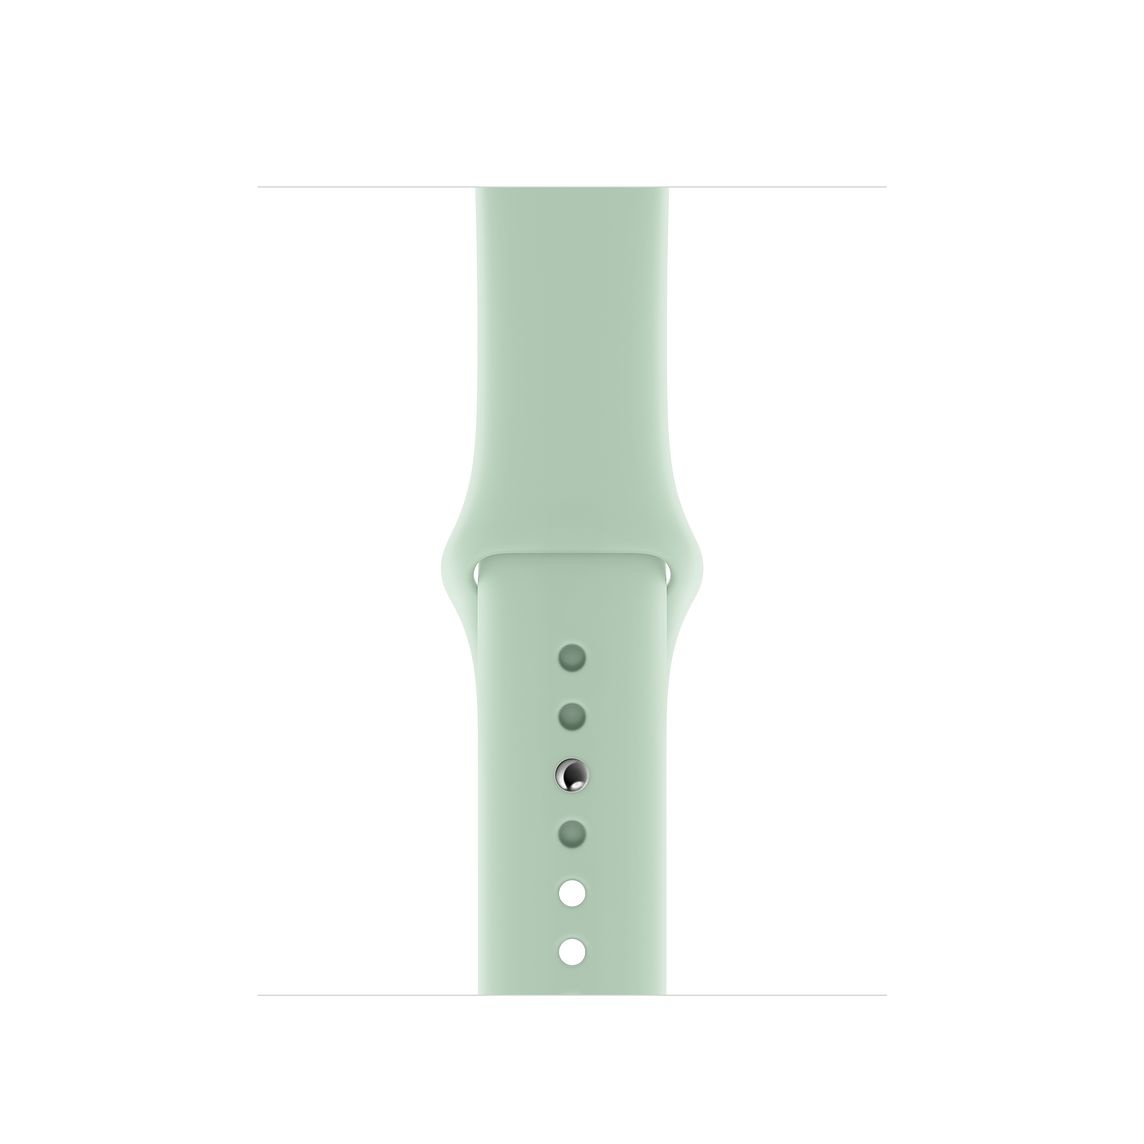 Bracelet sport Apple Watch - beryl